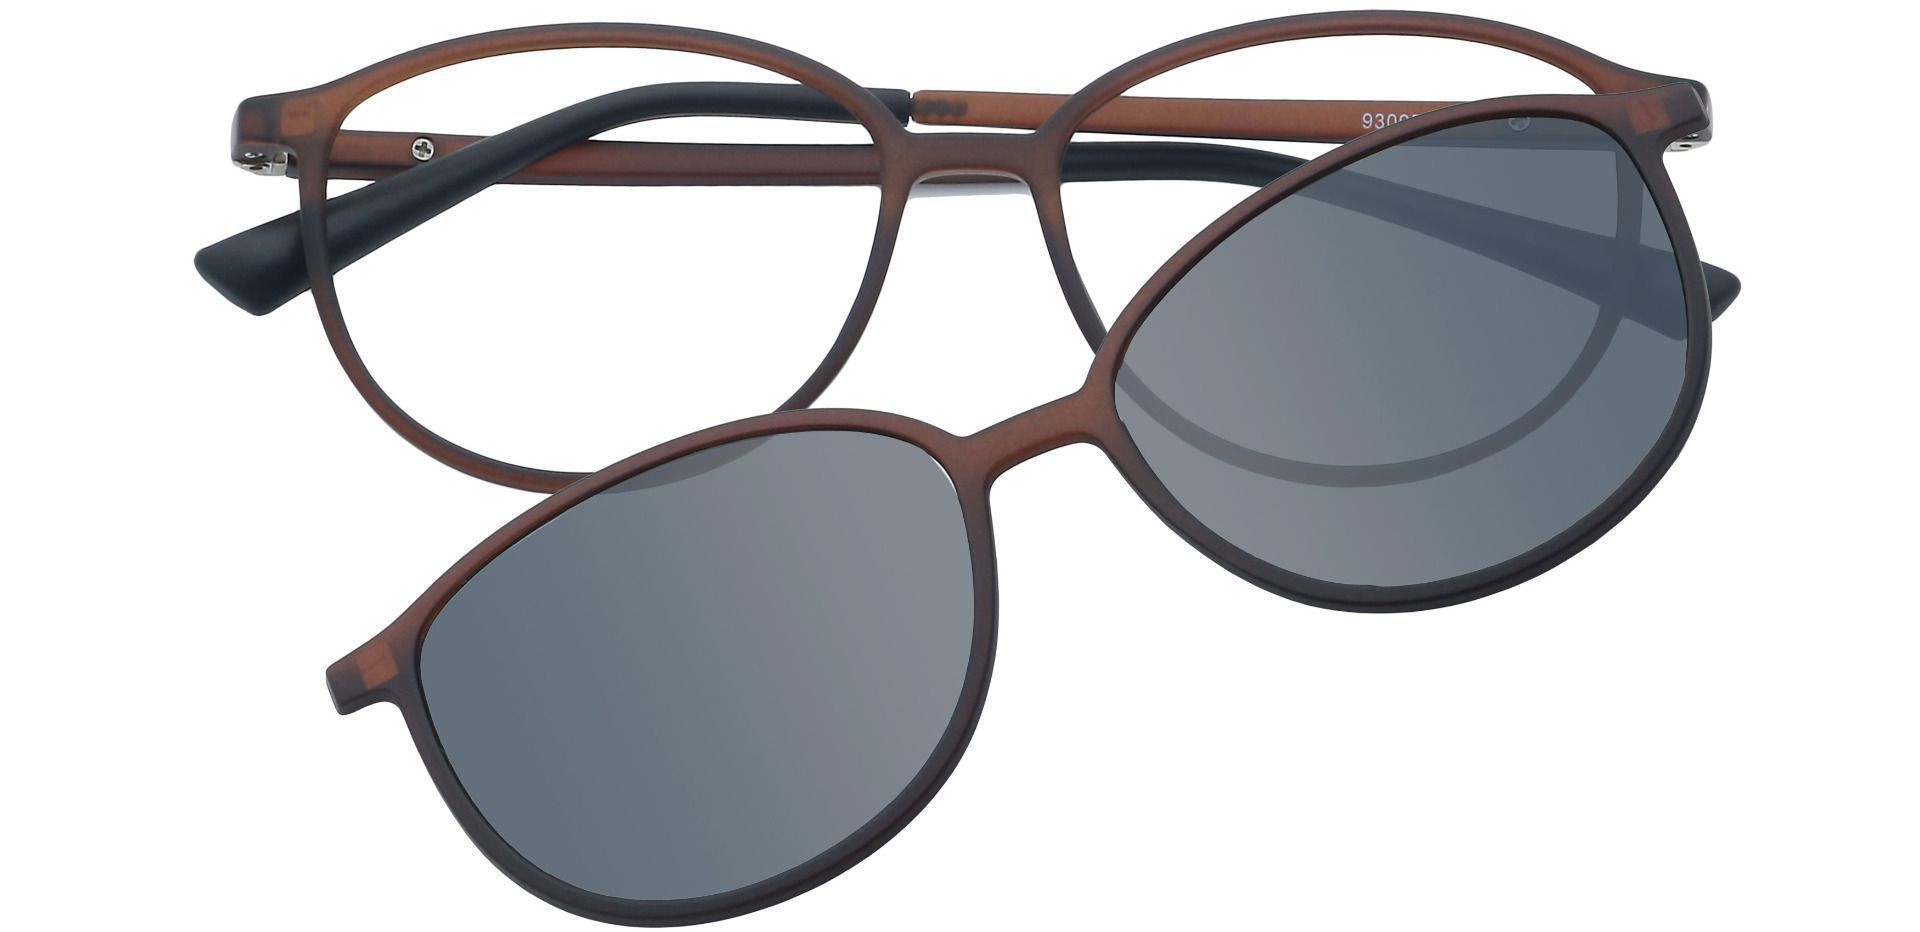 Melbourne Oval Progressive Glasses - Brown